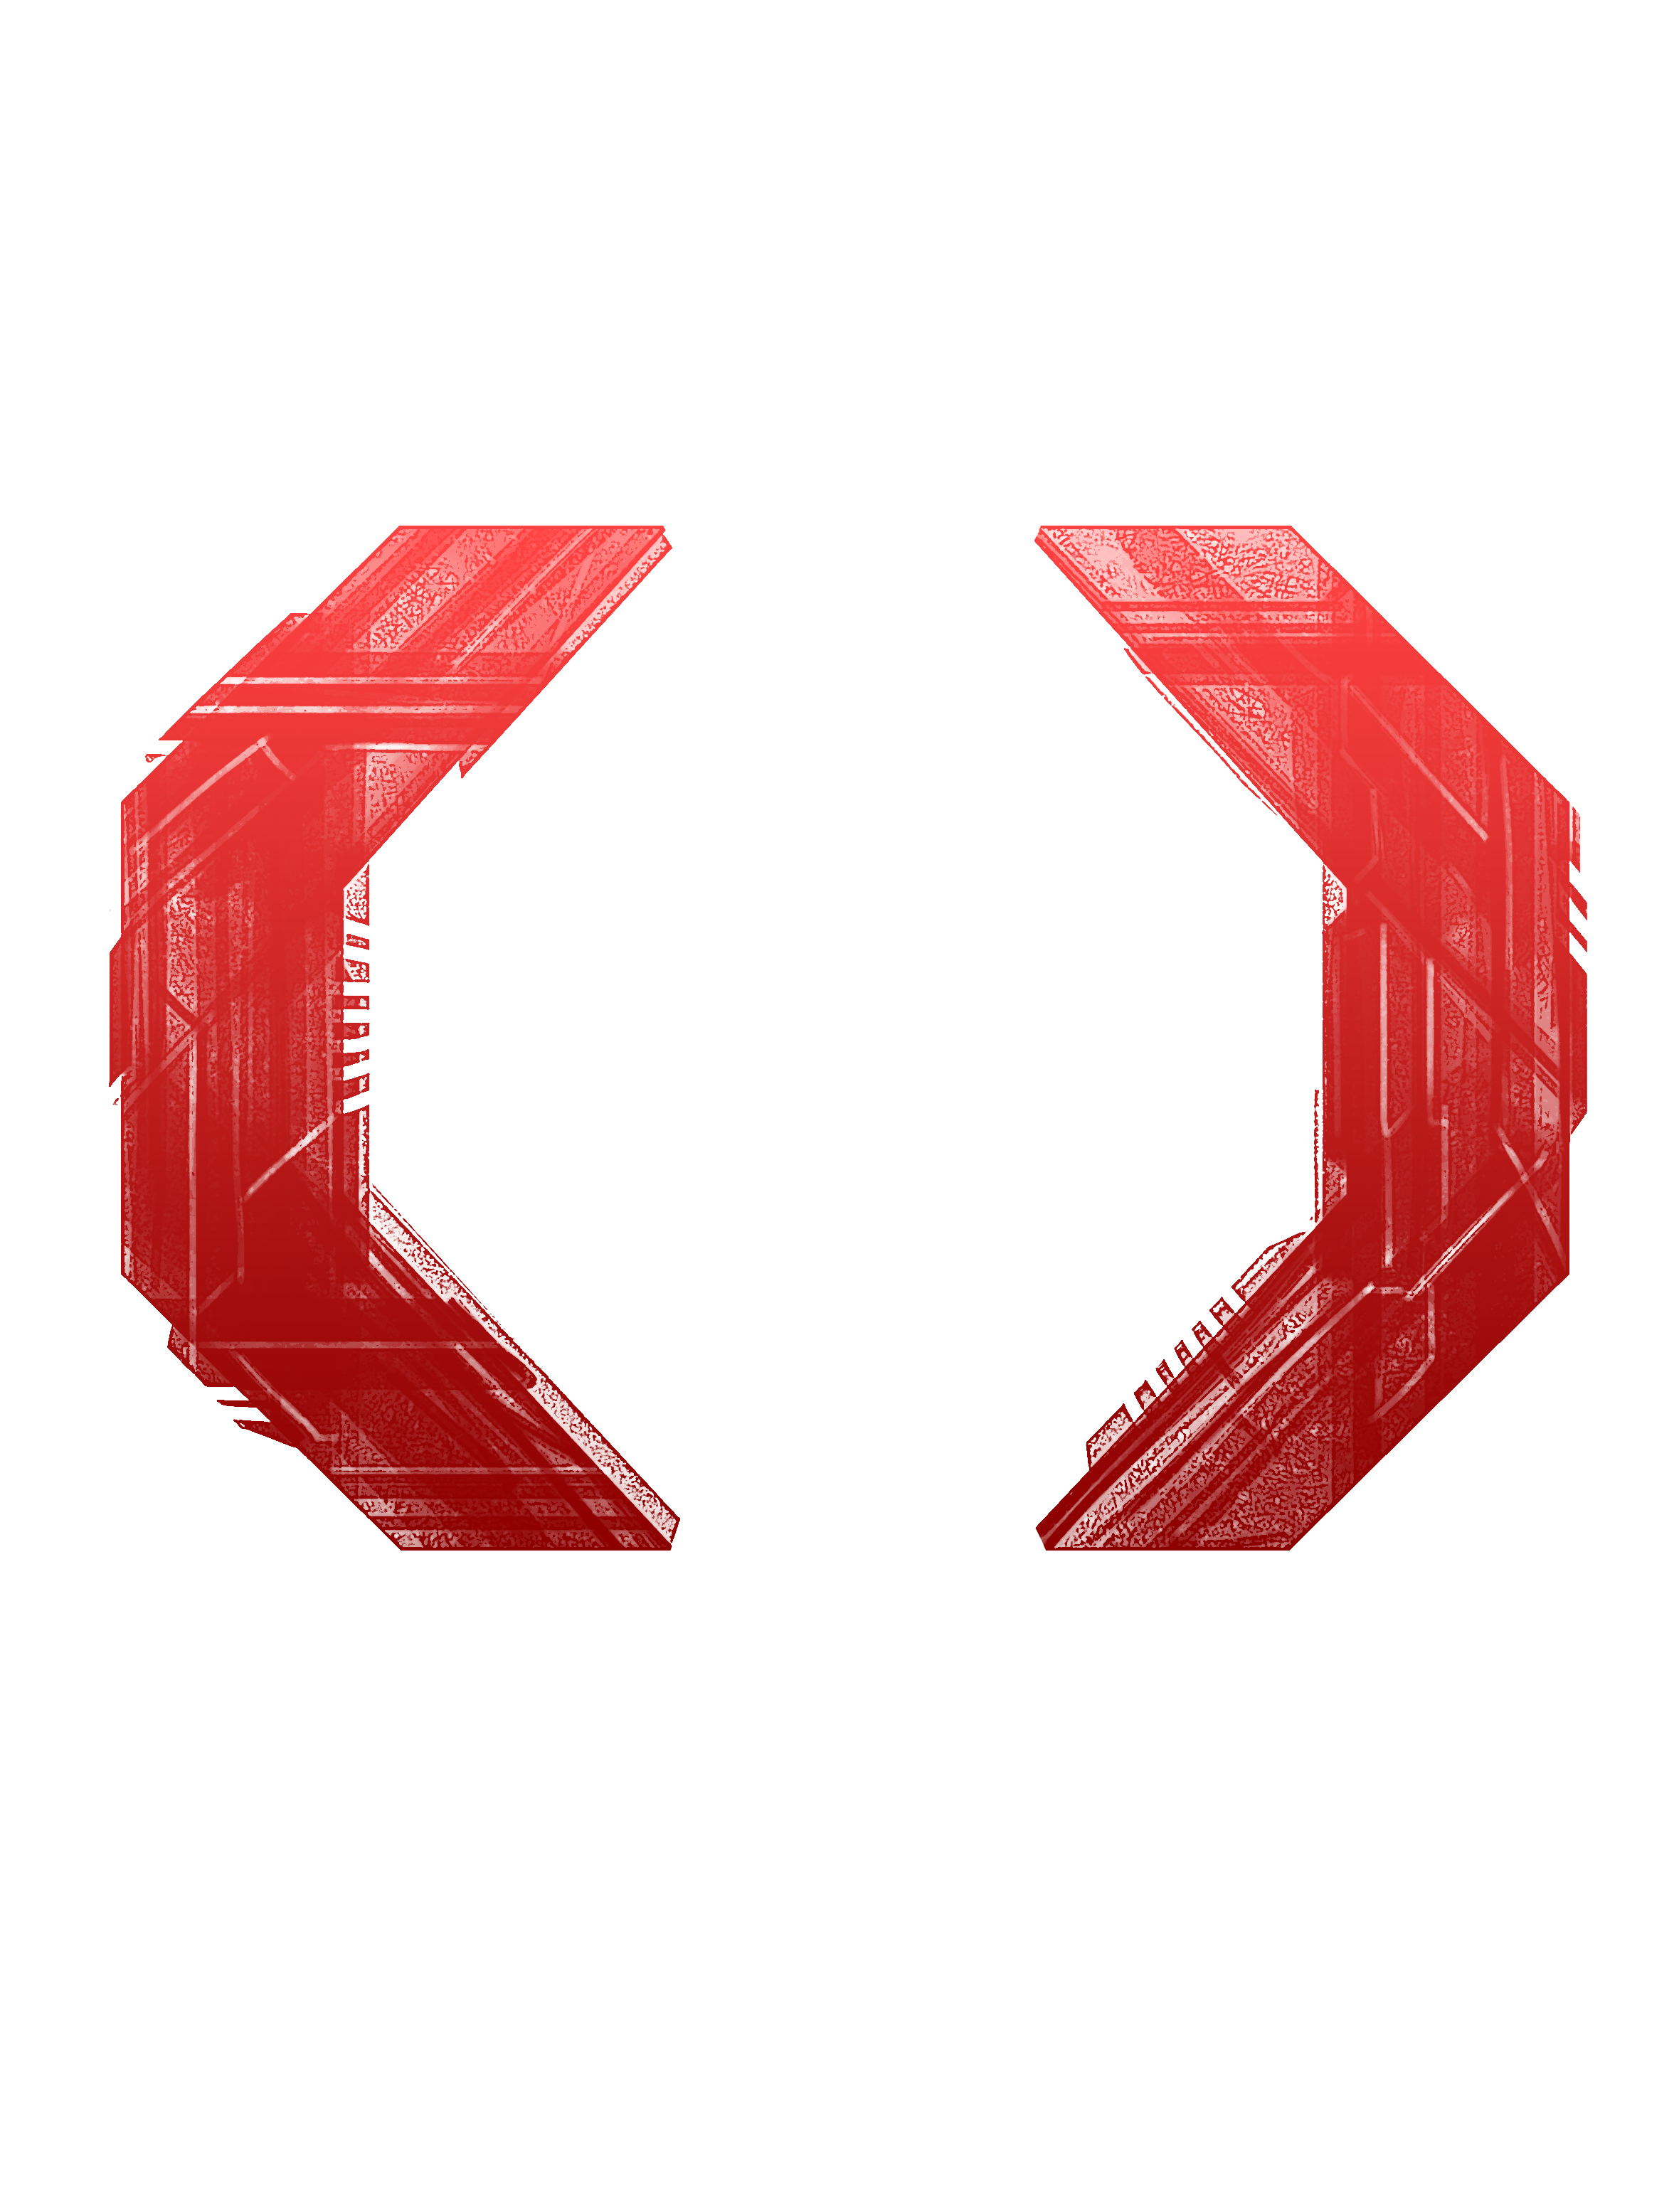 Celldweller Logo